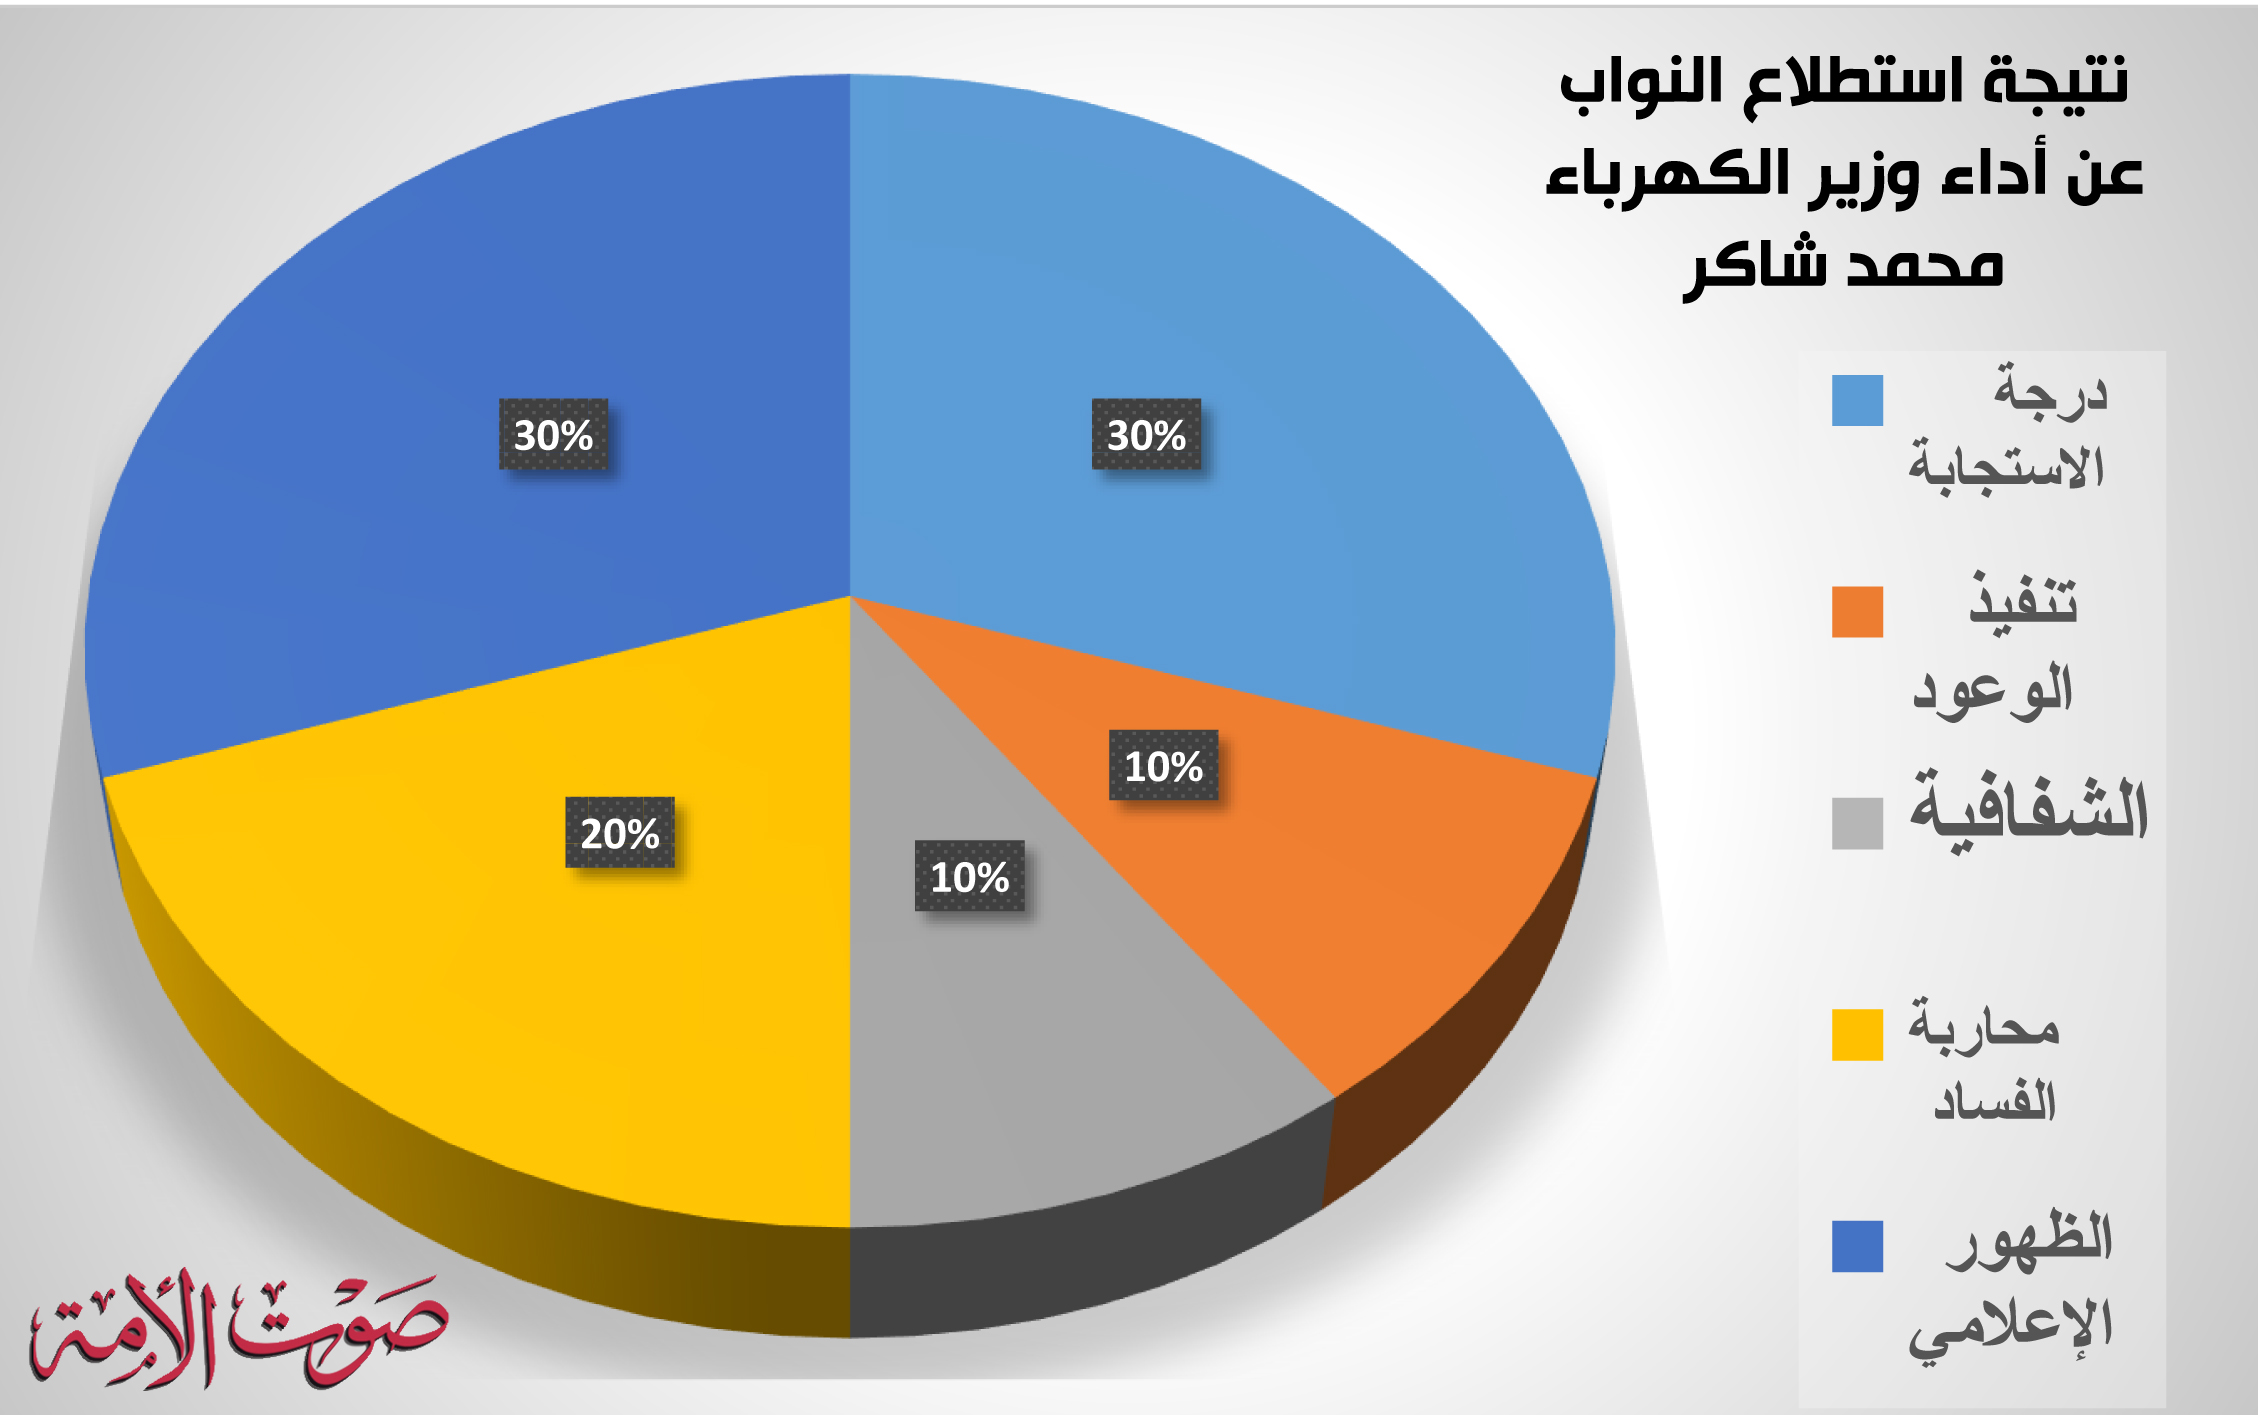 نتيجة استطلاع النواب عن أداء وزير الكهرباء محمد شاكر